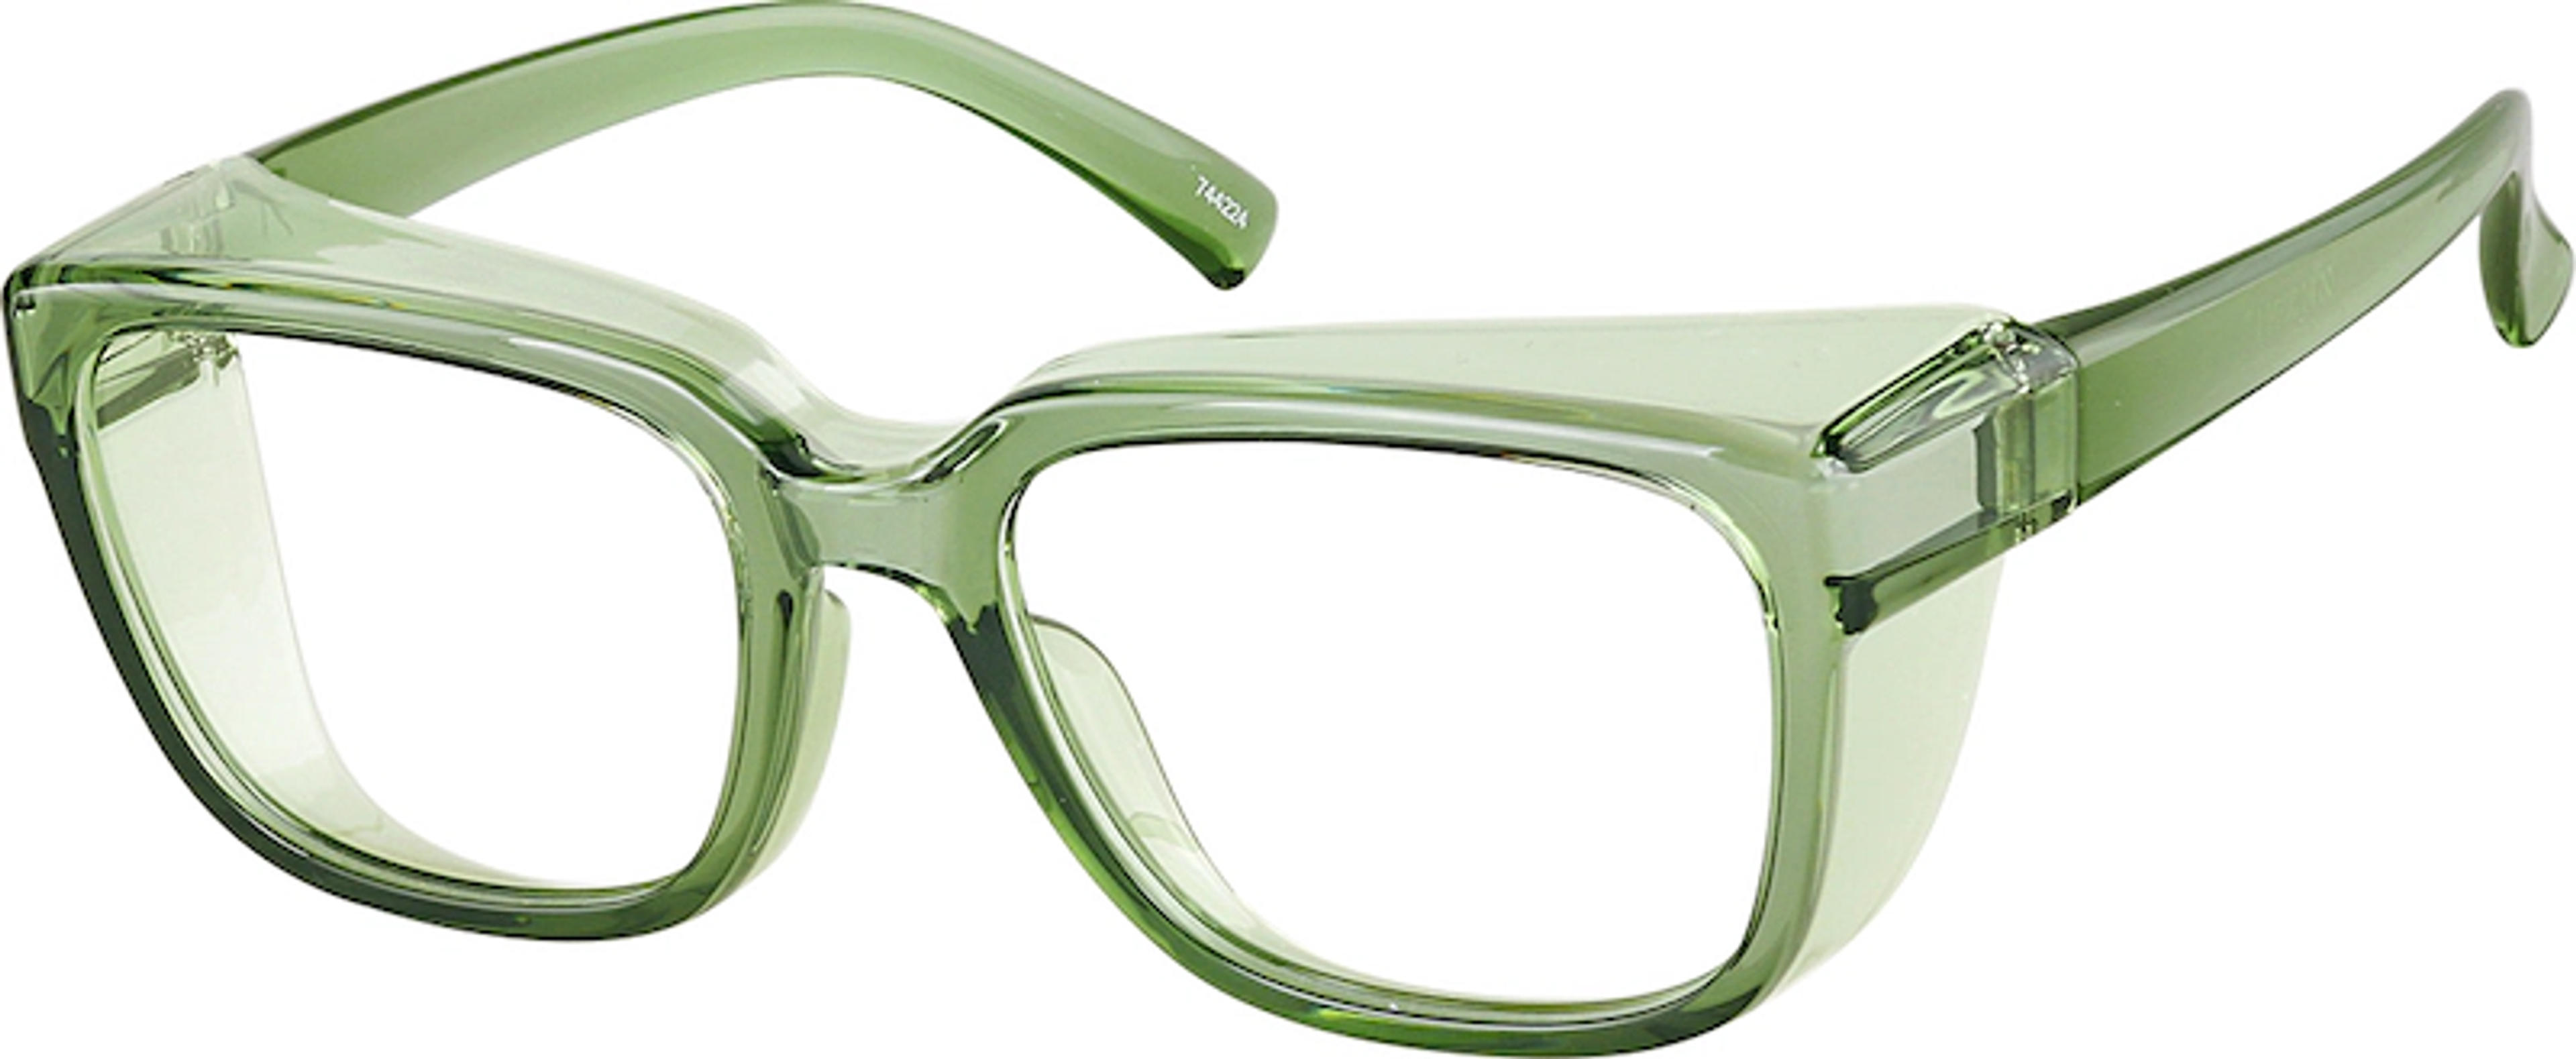 Green Square Prescription Protective Glasses #744224